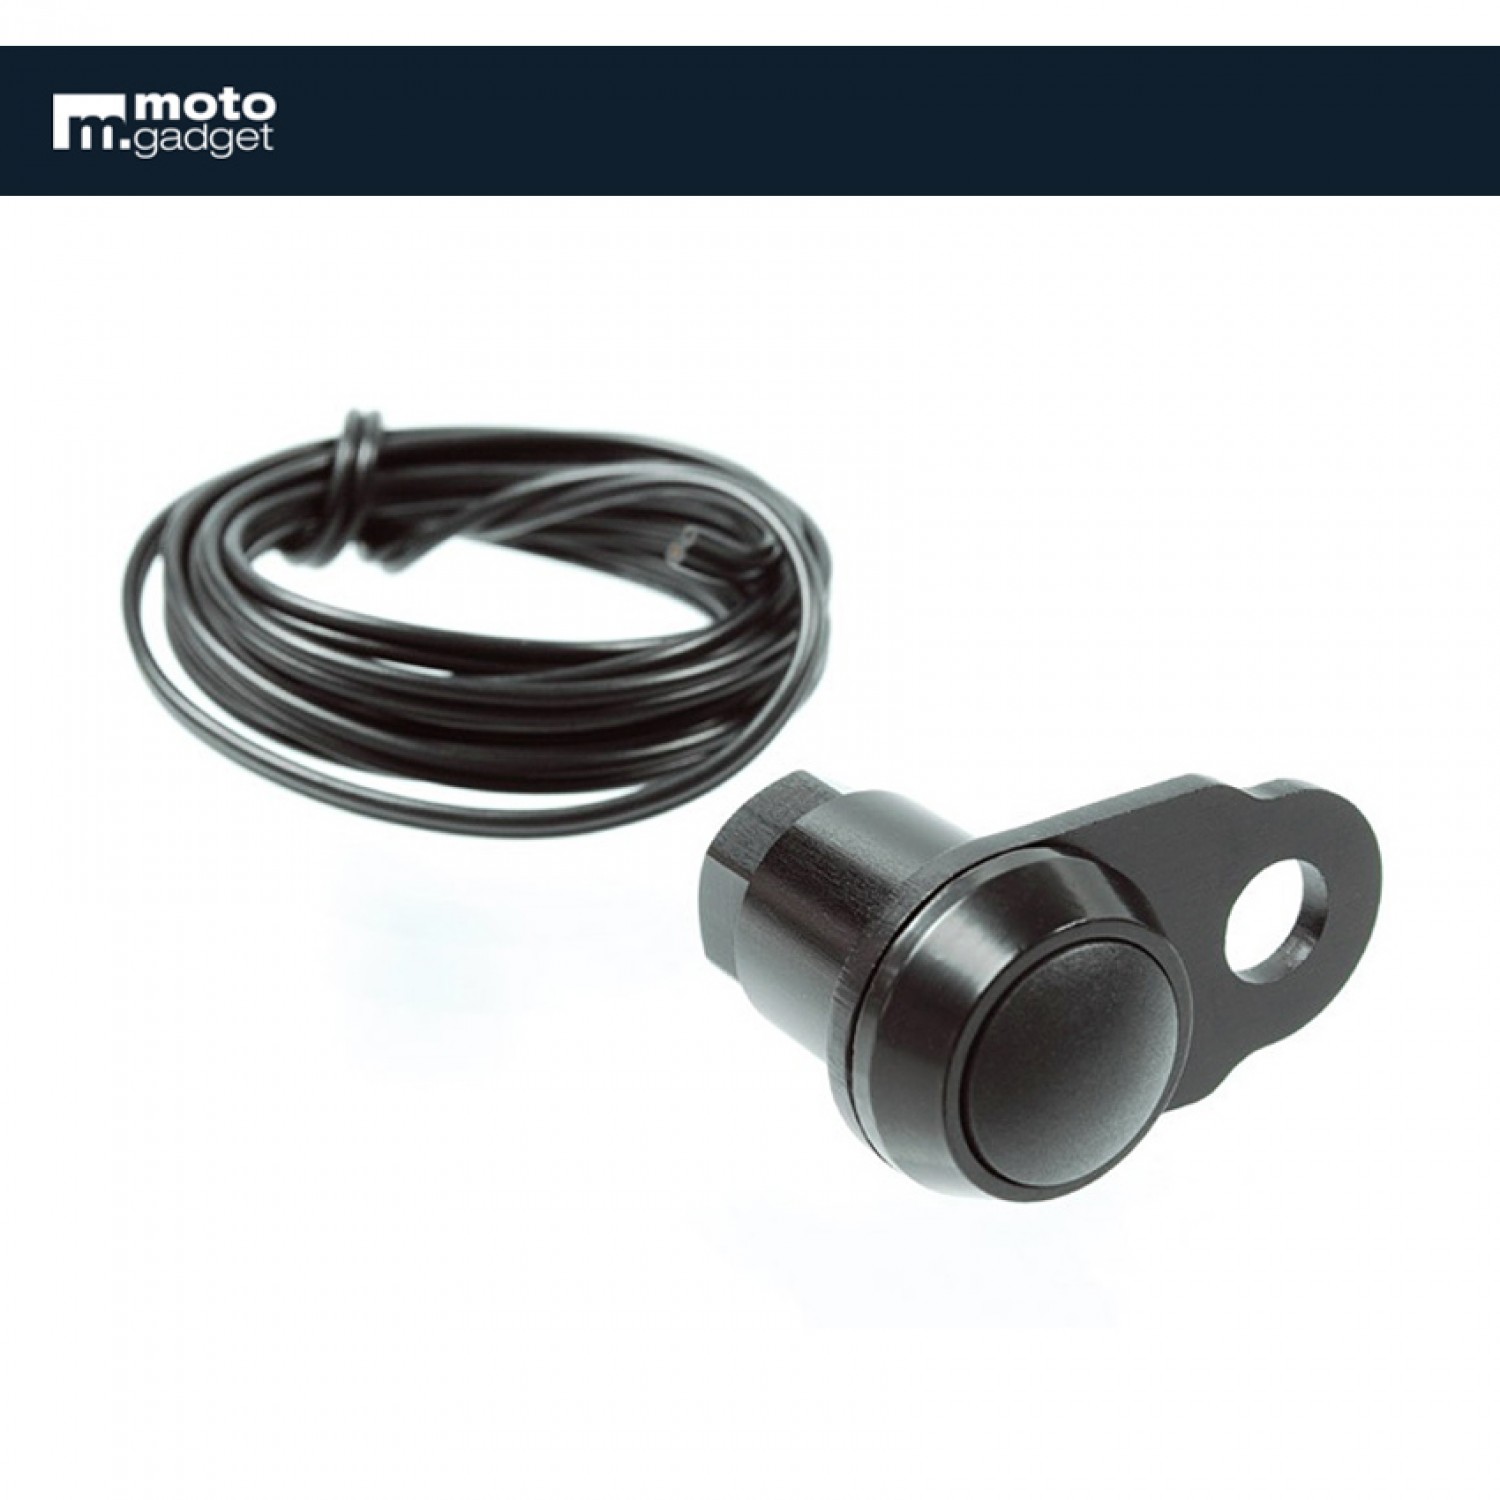 Compteur mini à câble - Noir - Krax-Moto